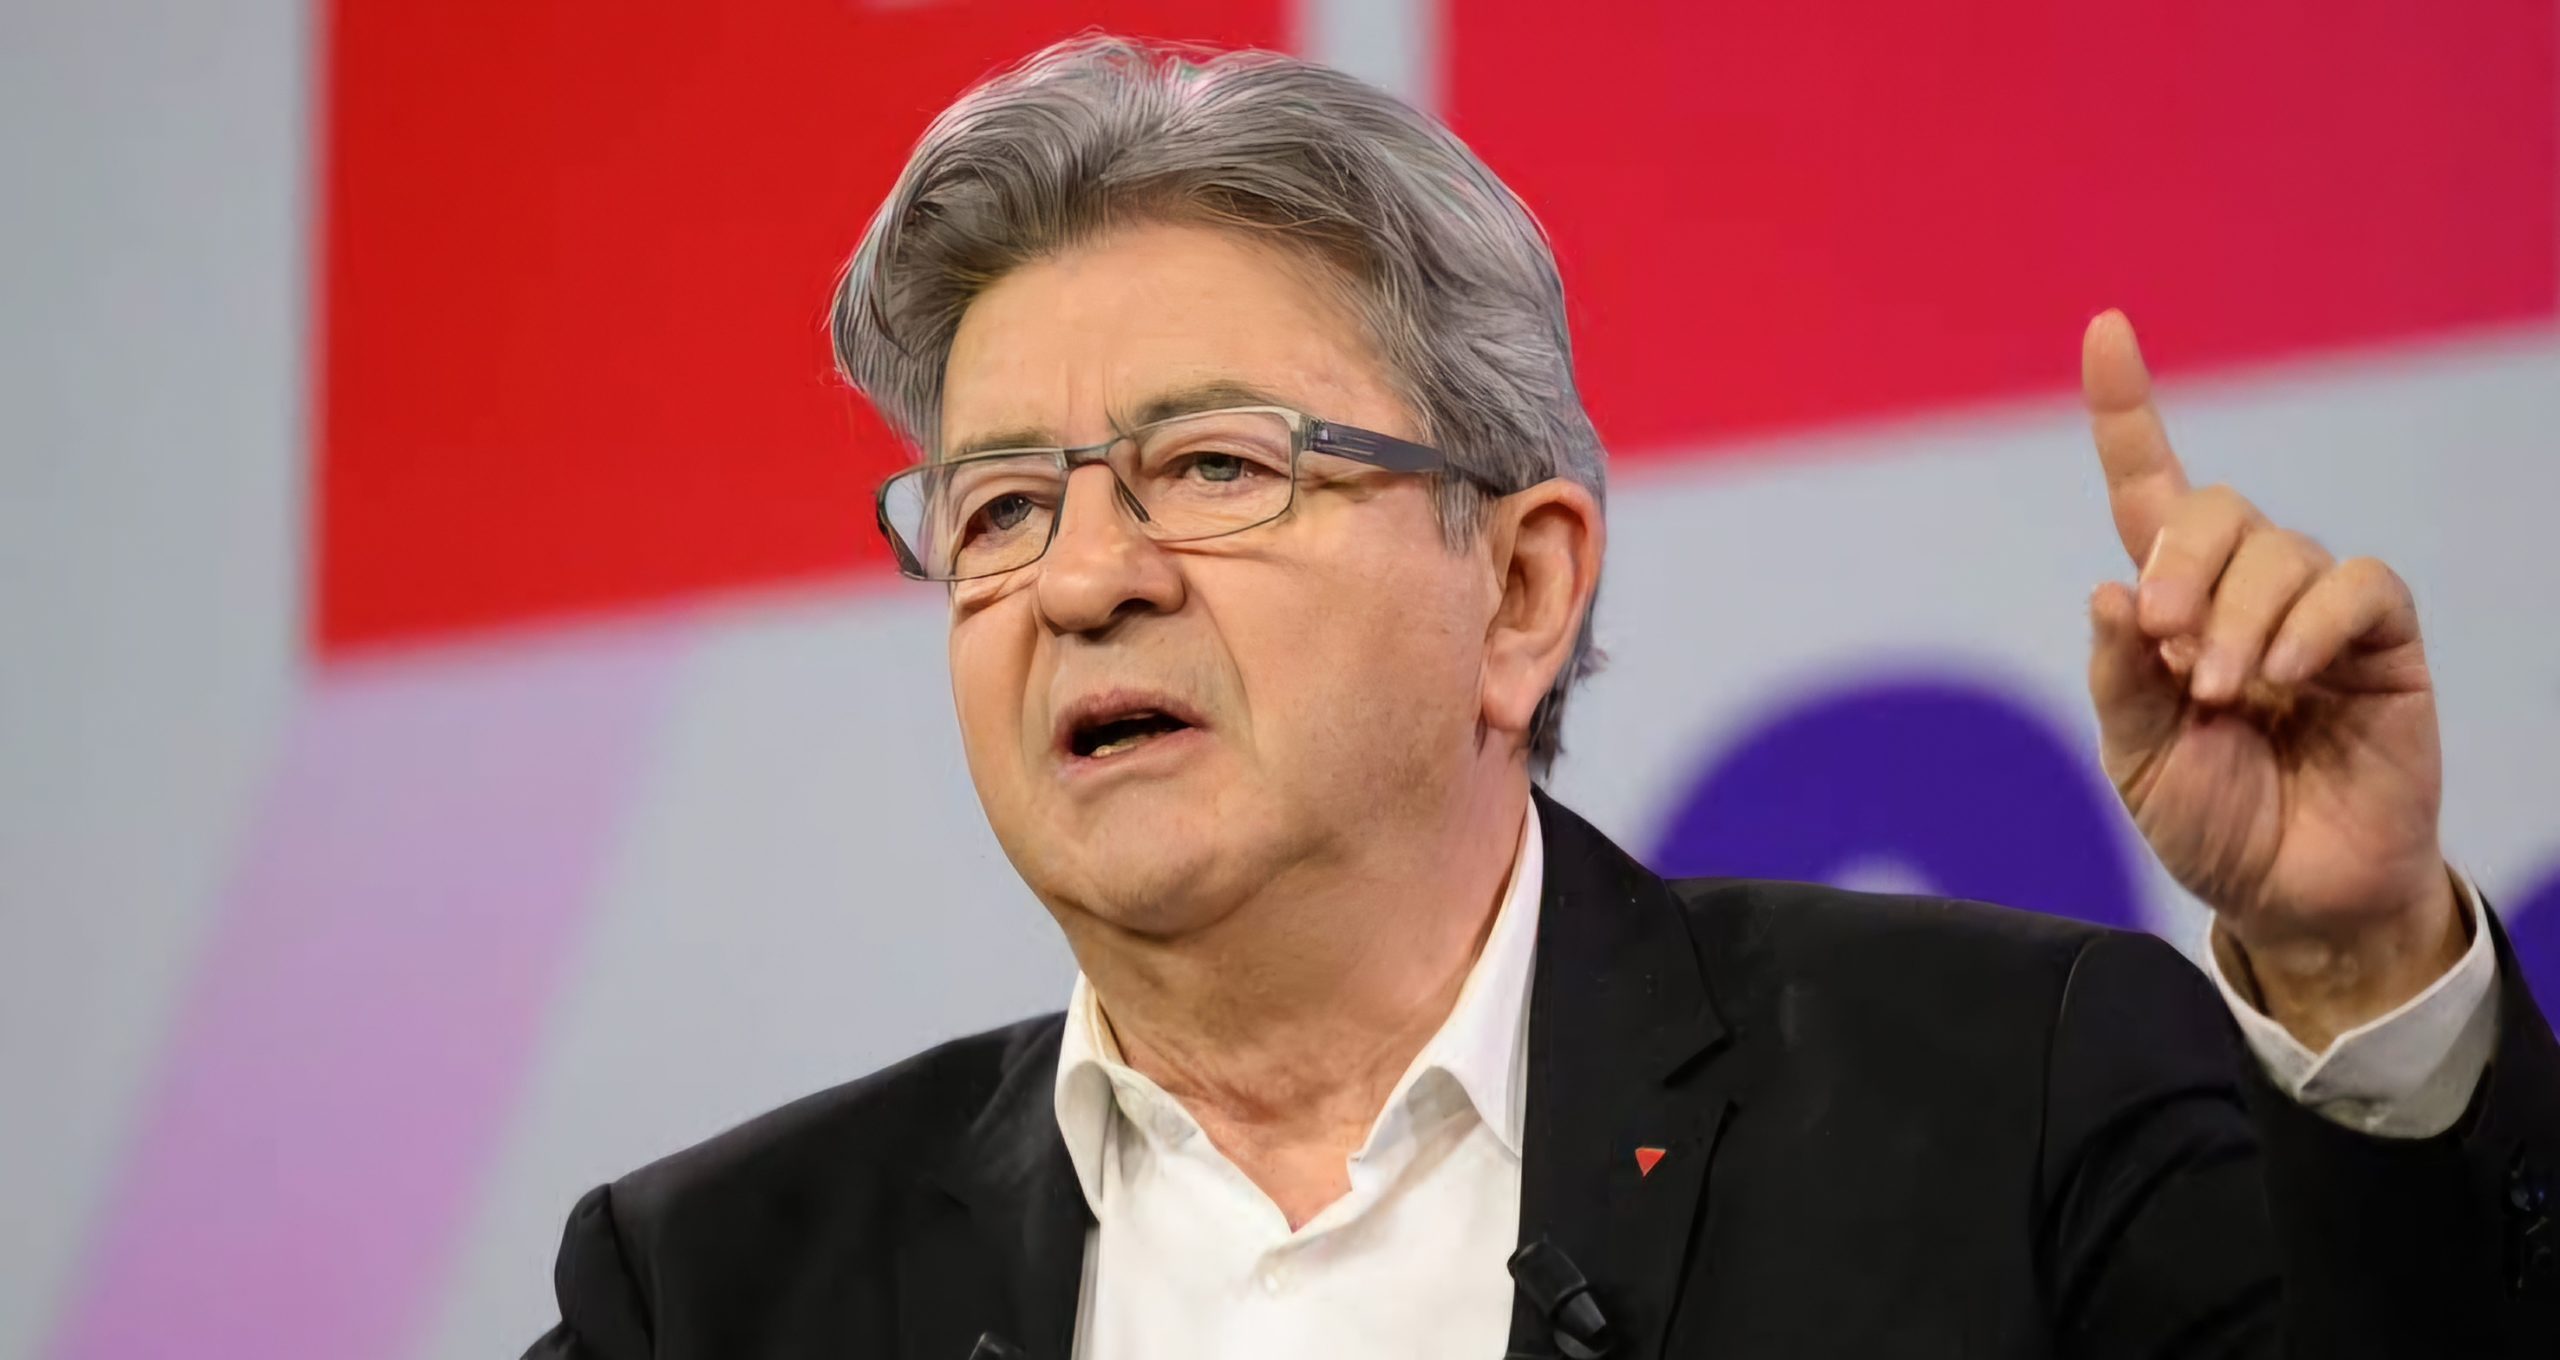 le leader du NFP (Nouveau Front Populaire), Jean-Luc Mélenchon, a appelé " à faire barrage" au parti de Jordan Bardella.